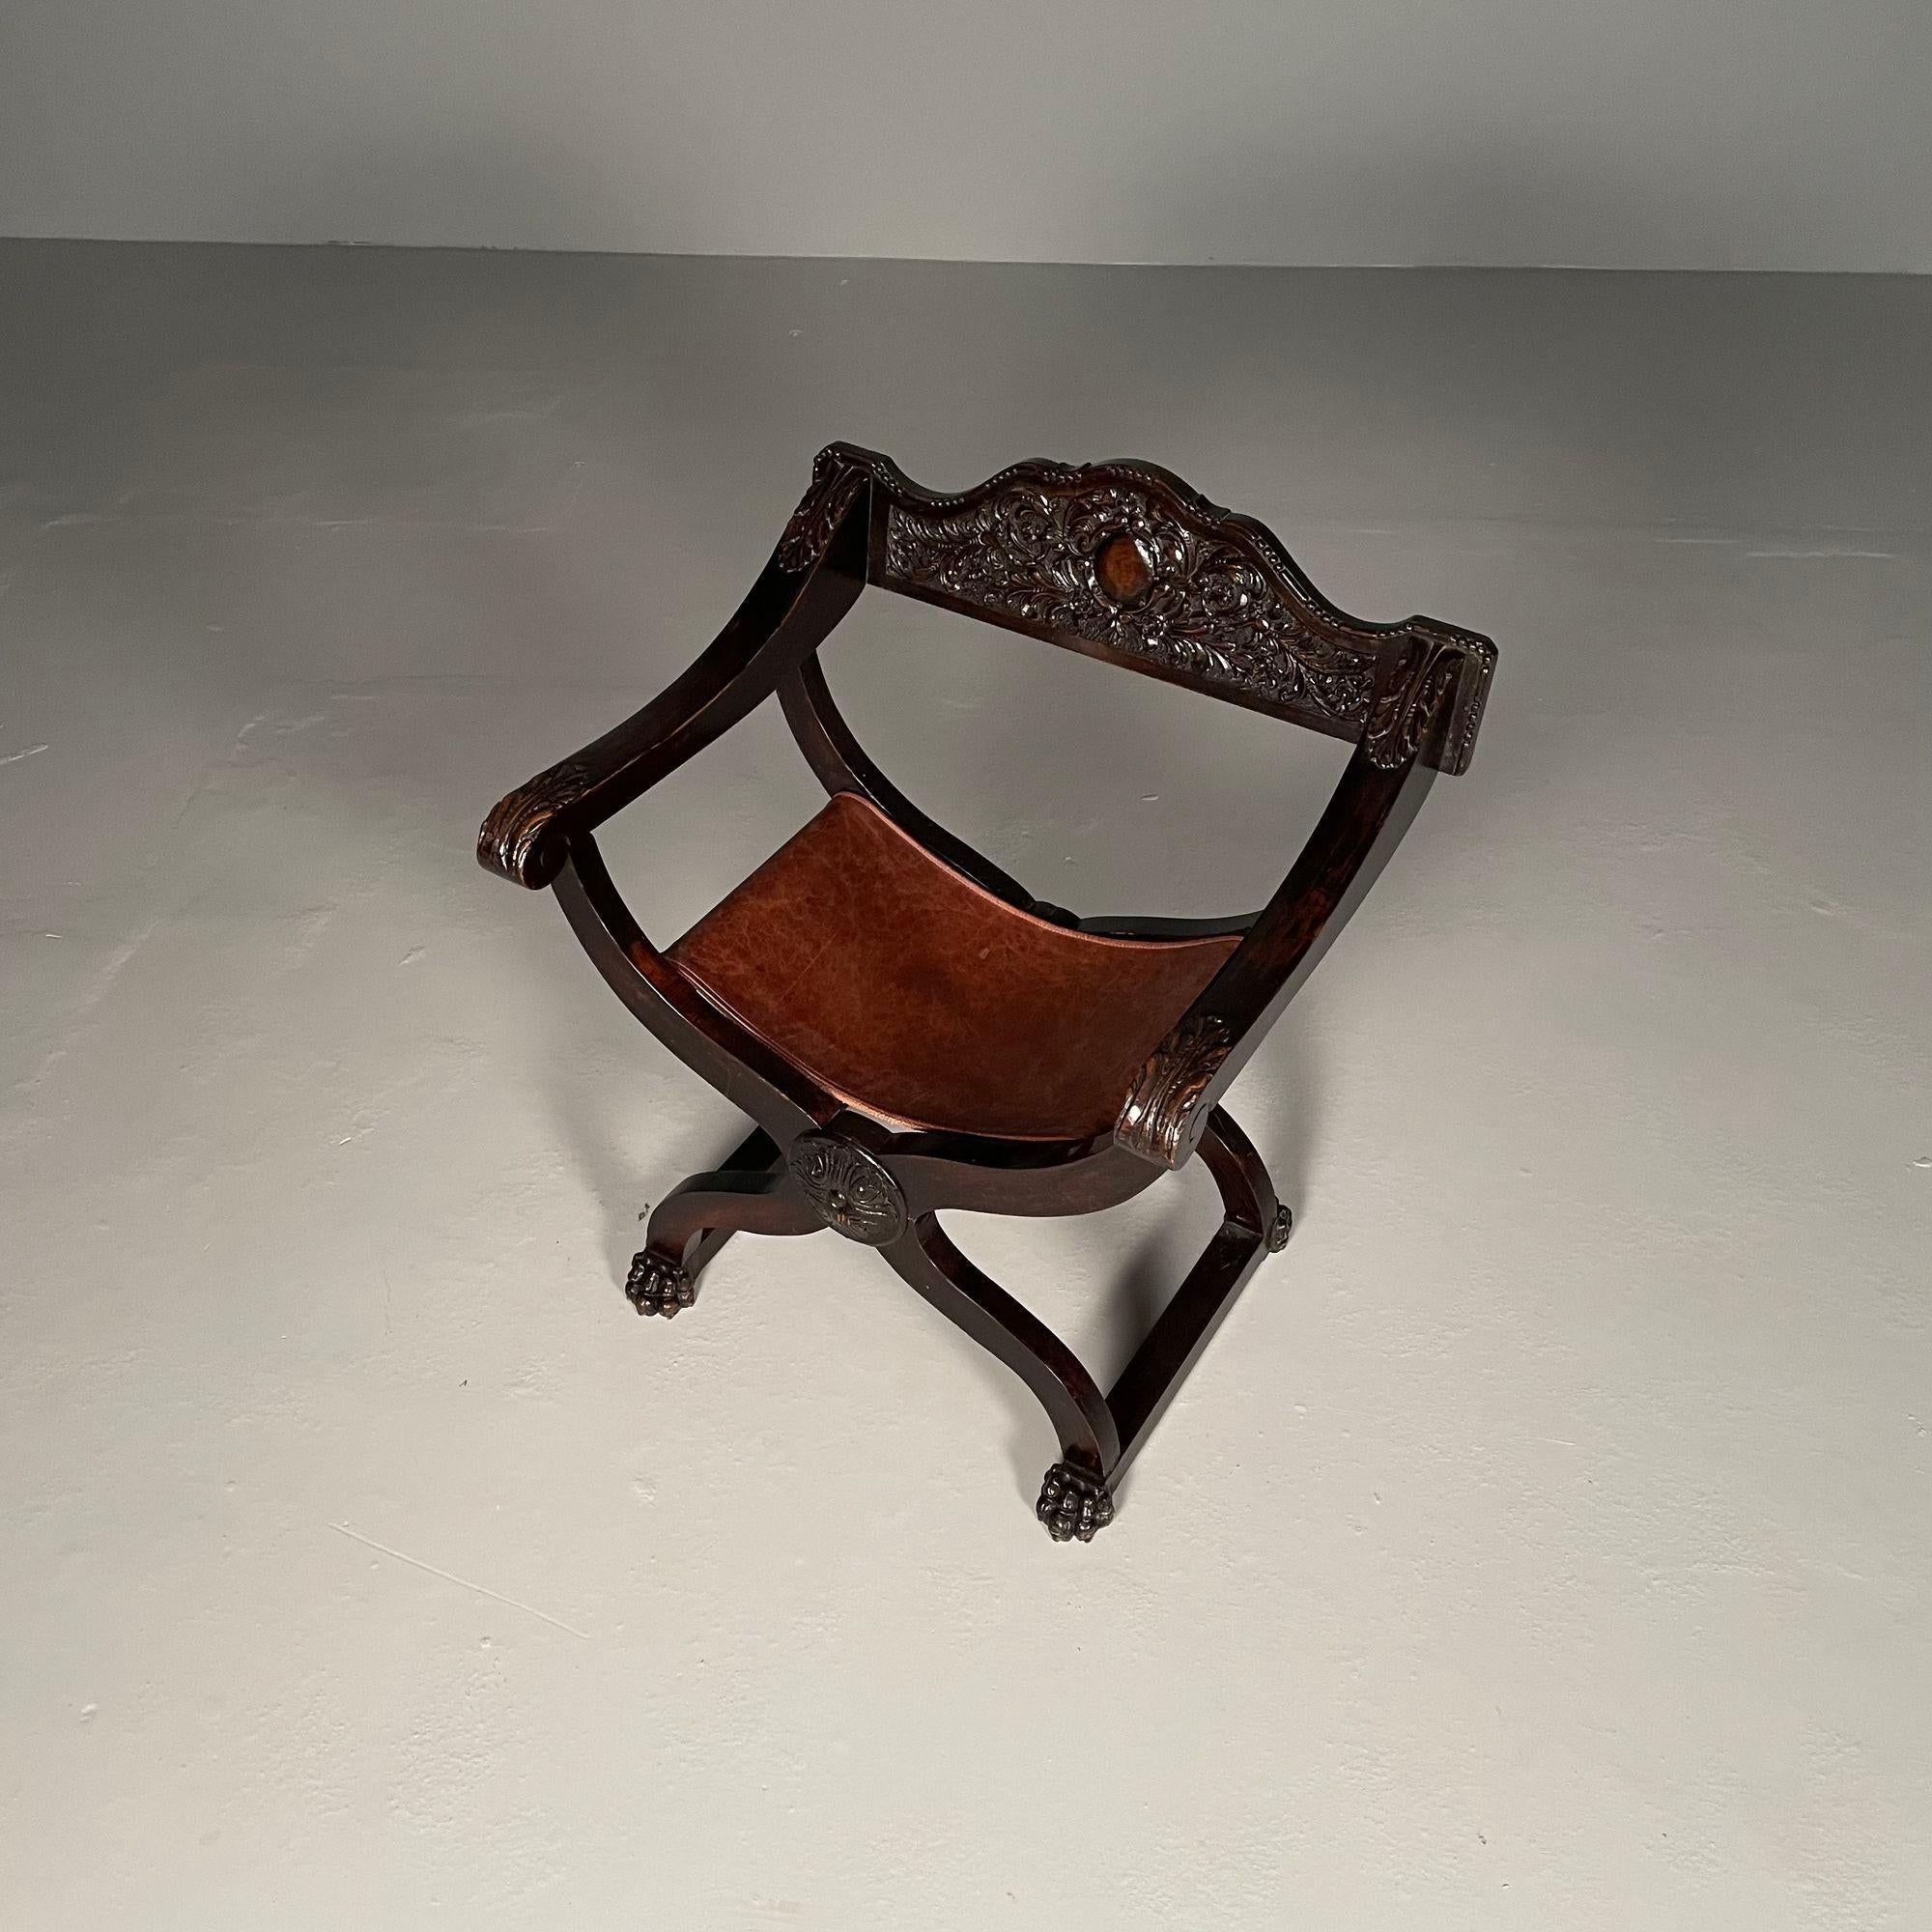 Chaise de bureau / à accoudoirs Renaissance italienne, sculptée, assise en cuir, 19e siècle

Cet exemplaire finement sculpté présente un siège en cuir usé, en bon état, encadré dans un cadre finement sculpté.

H32.5. L29 Profondeur 21. SH 17